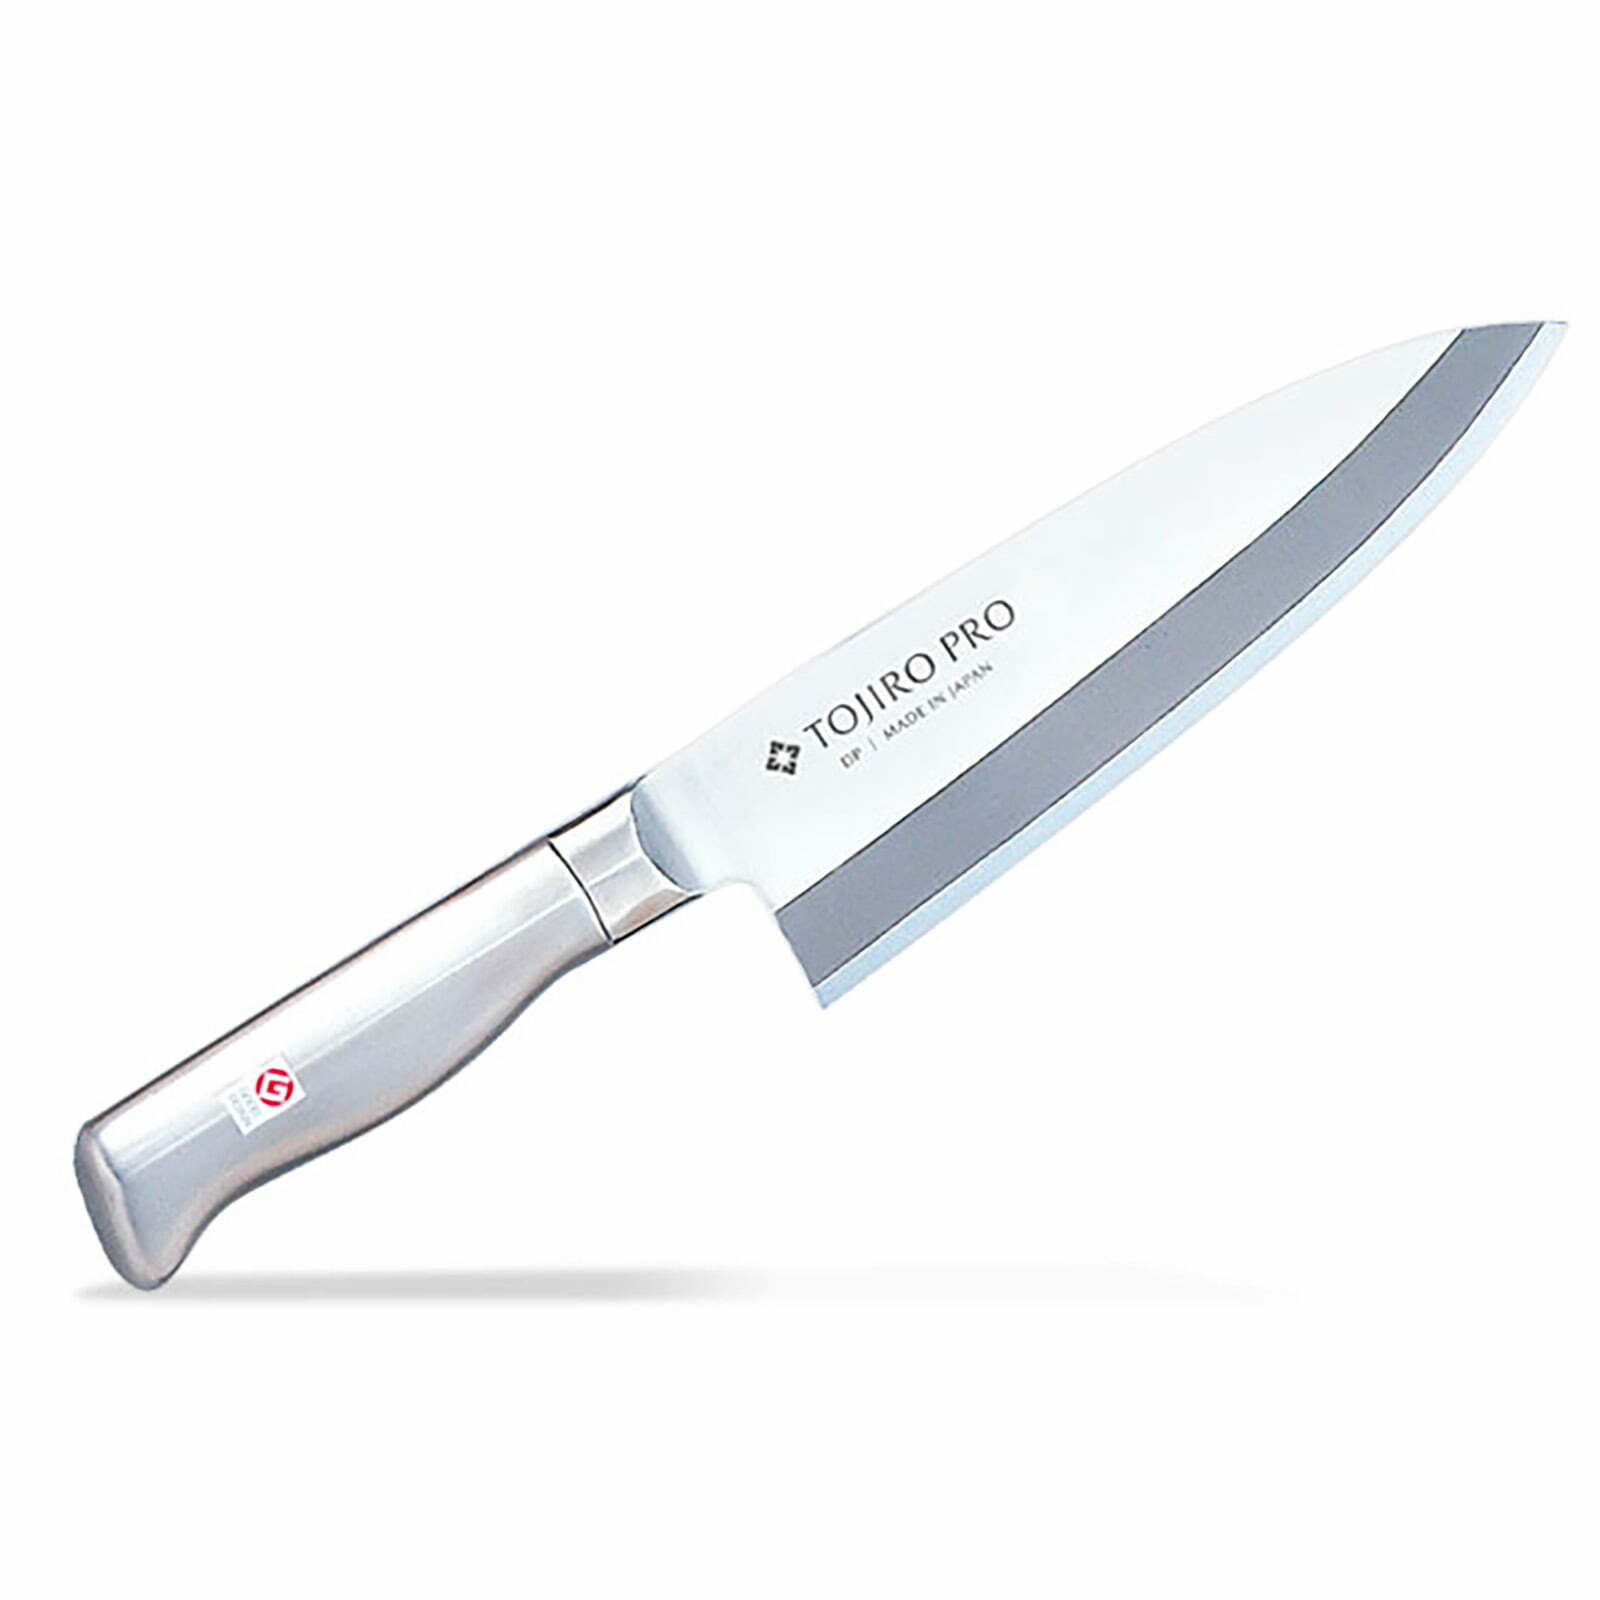 סכין פילוט דגים דבה 165 מ״מ מחוזקת 2 שכבות: פלדת פחמן יפנית VG-10 עטופה פלדת אל-חלד SKTOJIF63611